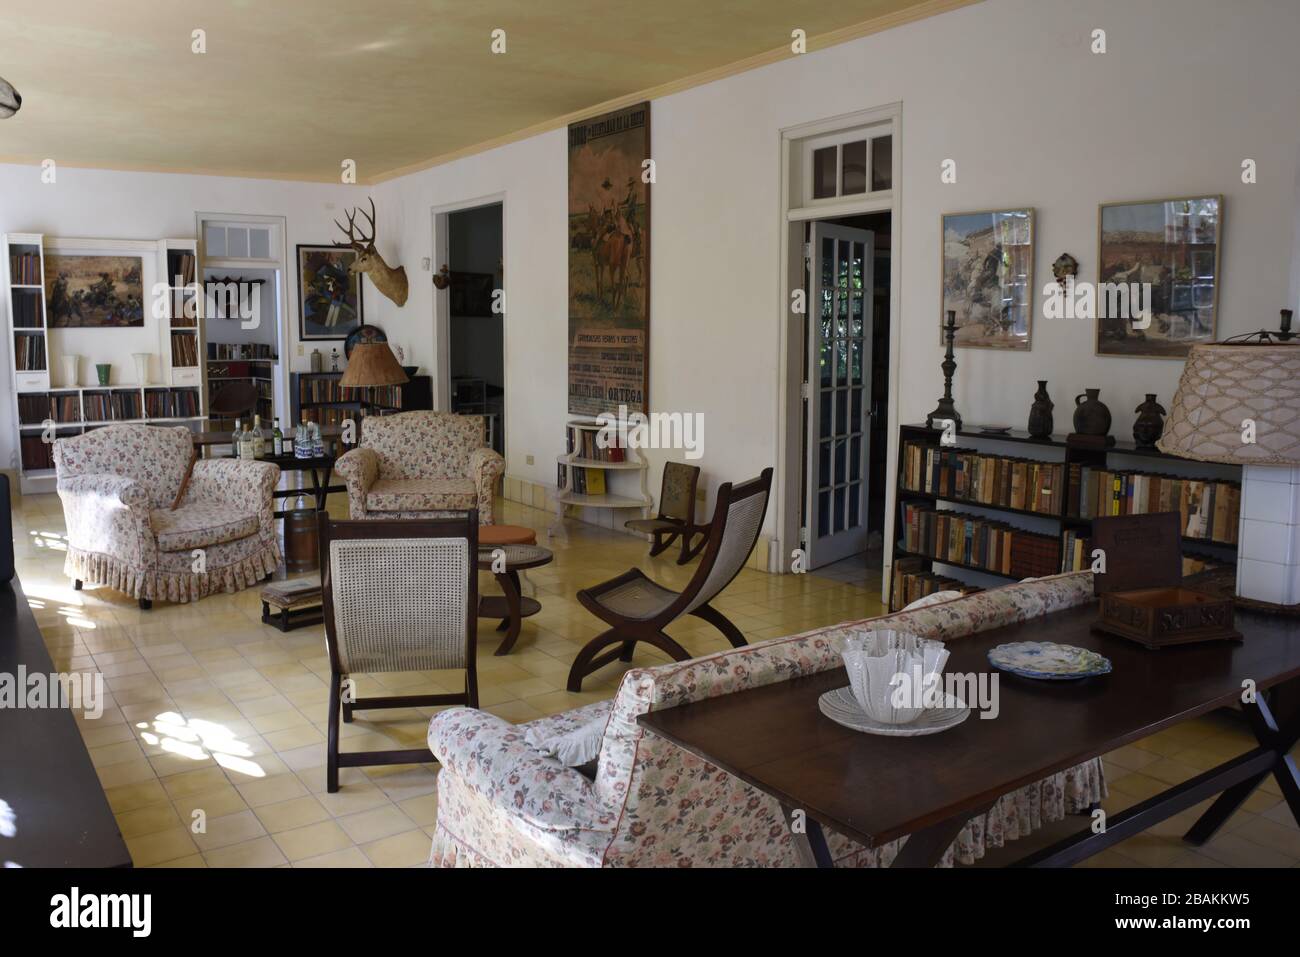 Casa, salón, decoración, 2014, Cuba Foto de stock